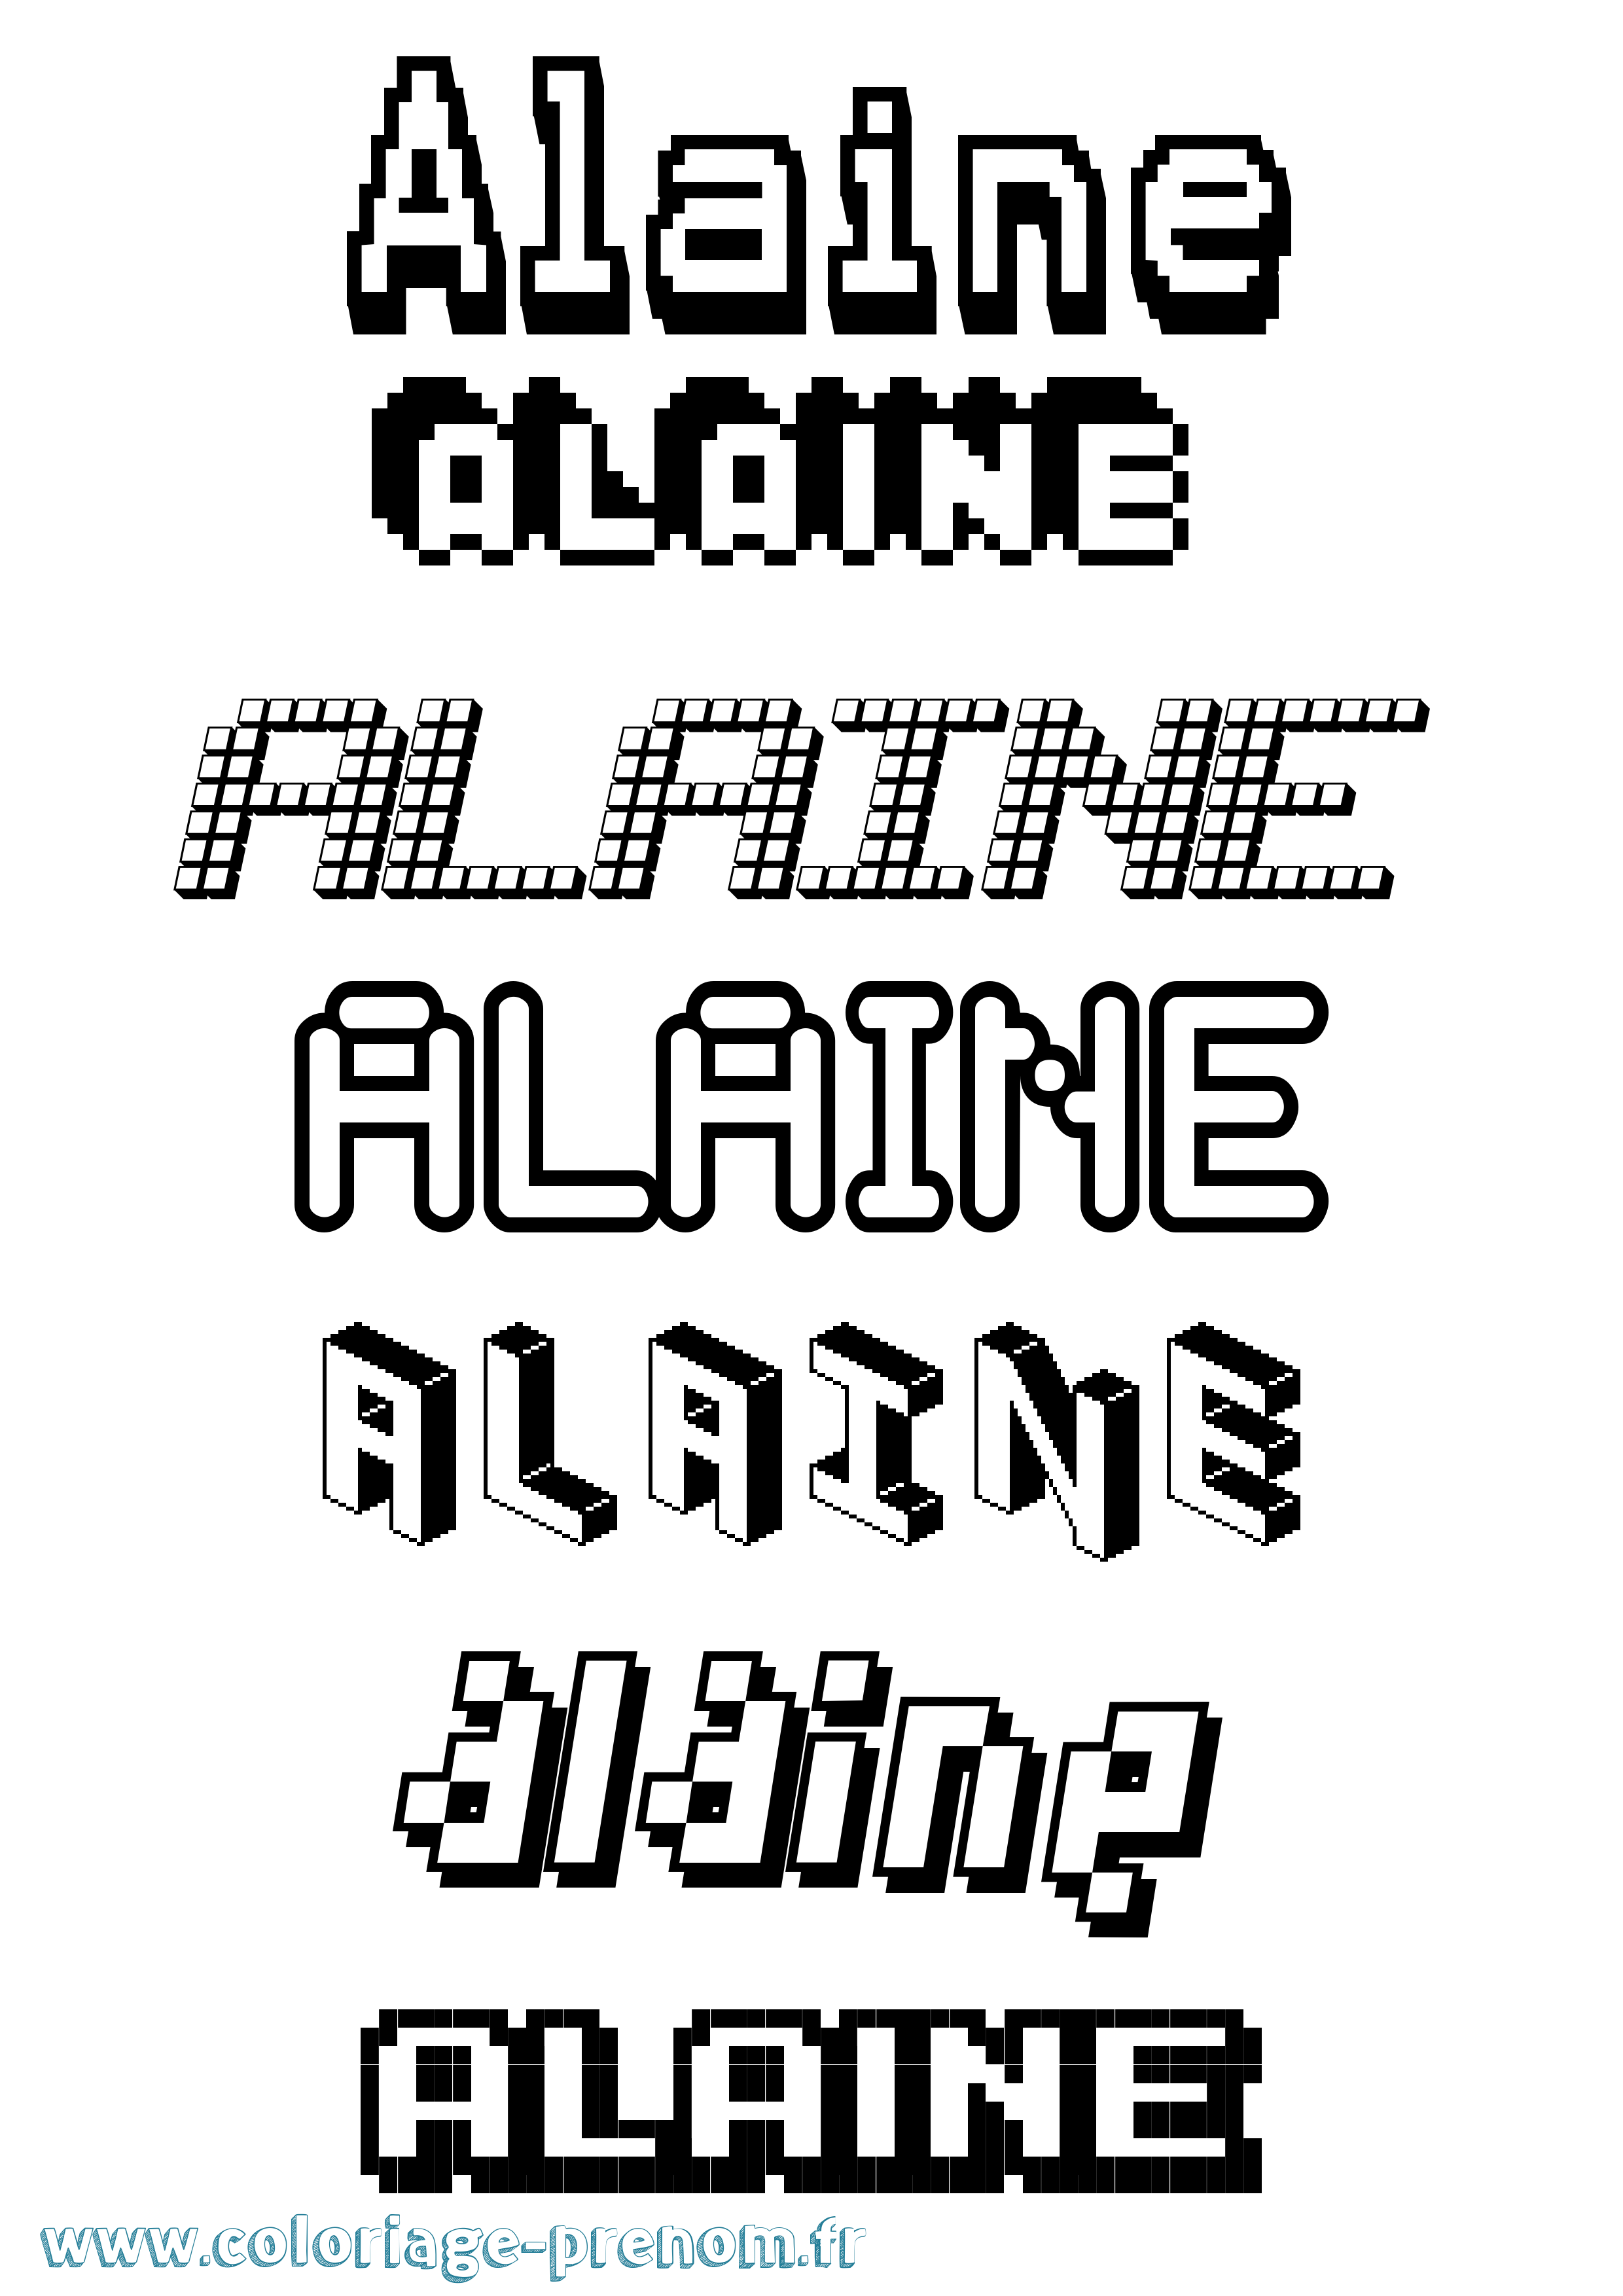 Coloriage prénom Alaine Pixel